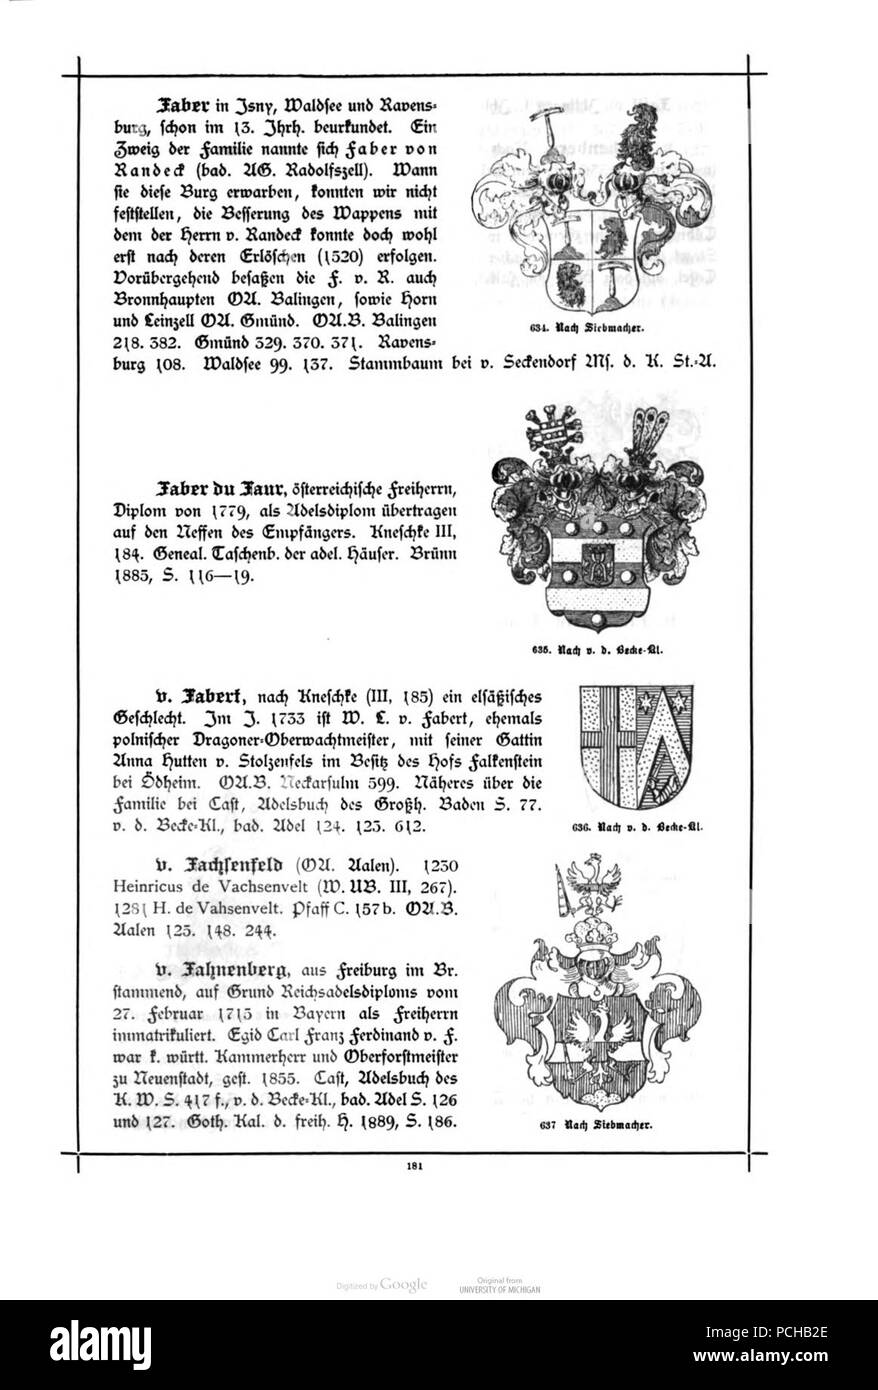 Alberti Wuerttembergisches Adels- und Wappenbuch 0181. Stock Photo